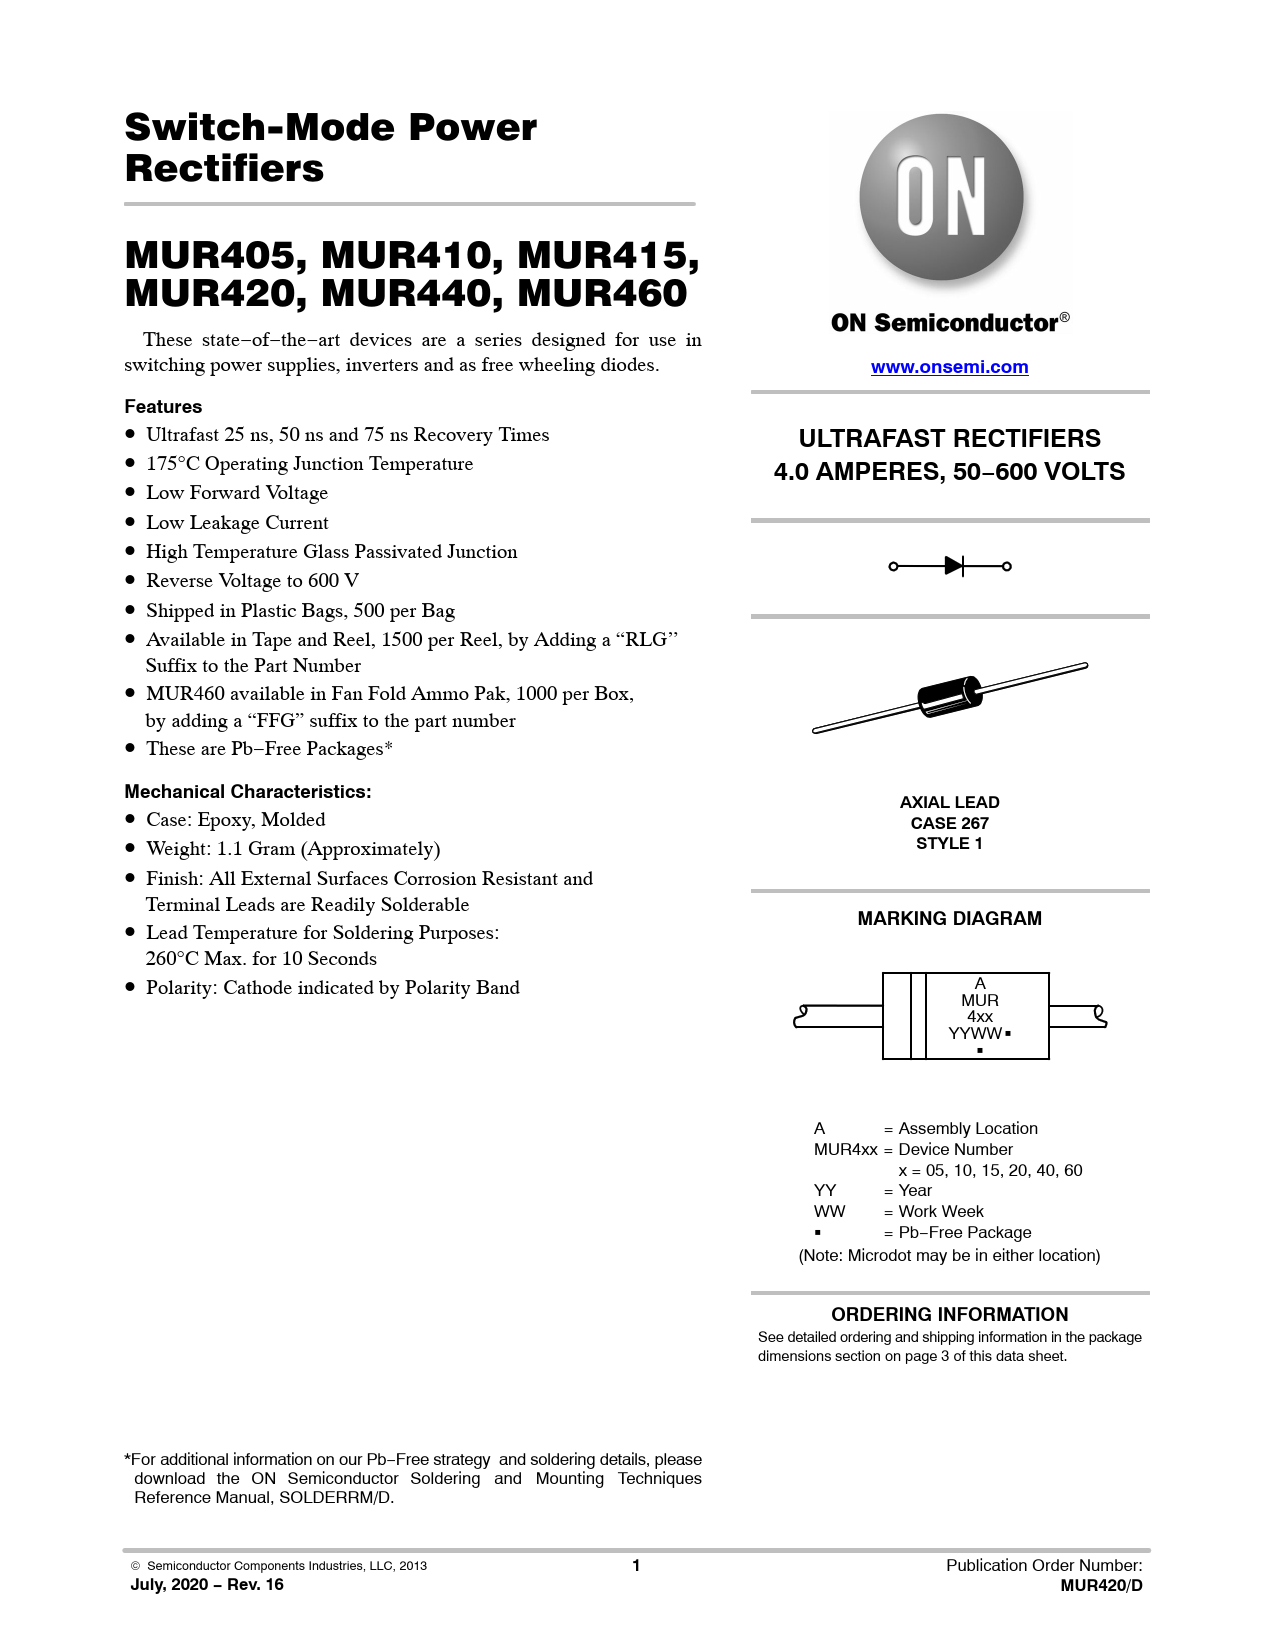 Datasheet MUR405, MUR410, MUR415, MUR420, MUR440, MUR460 ON Semiconductor, Версия: 16